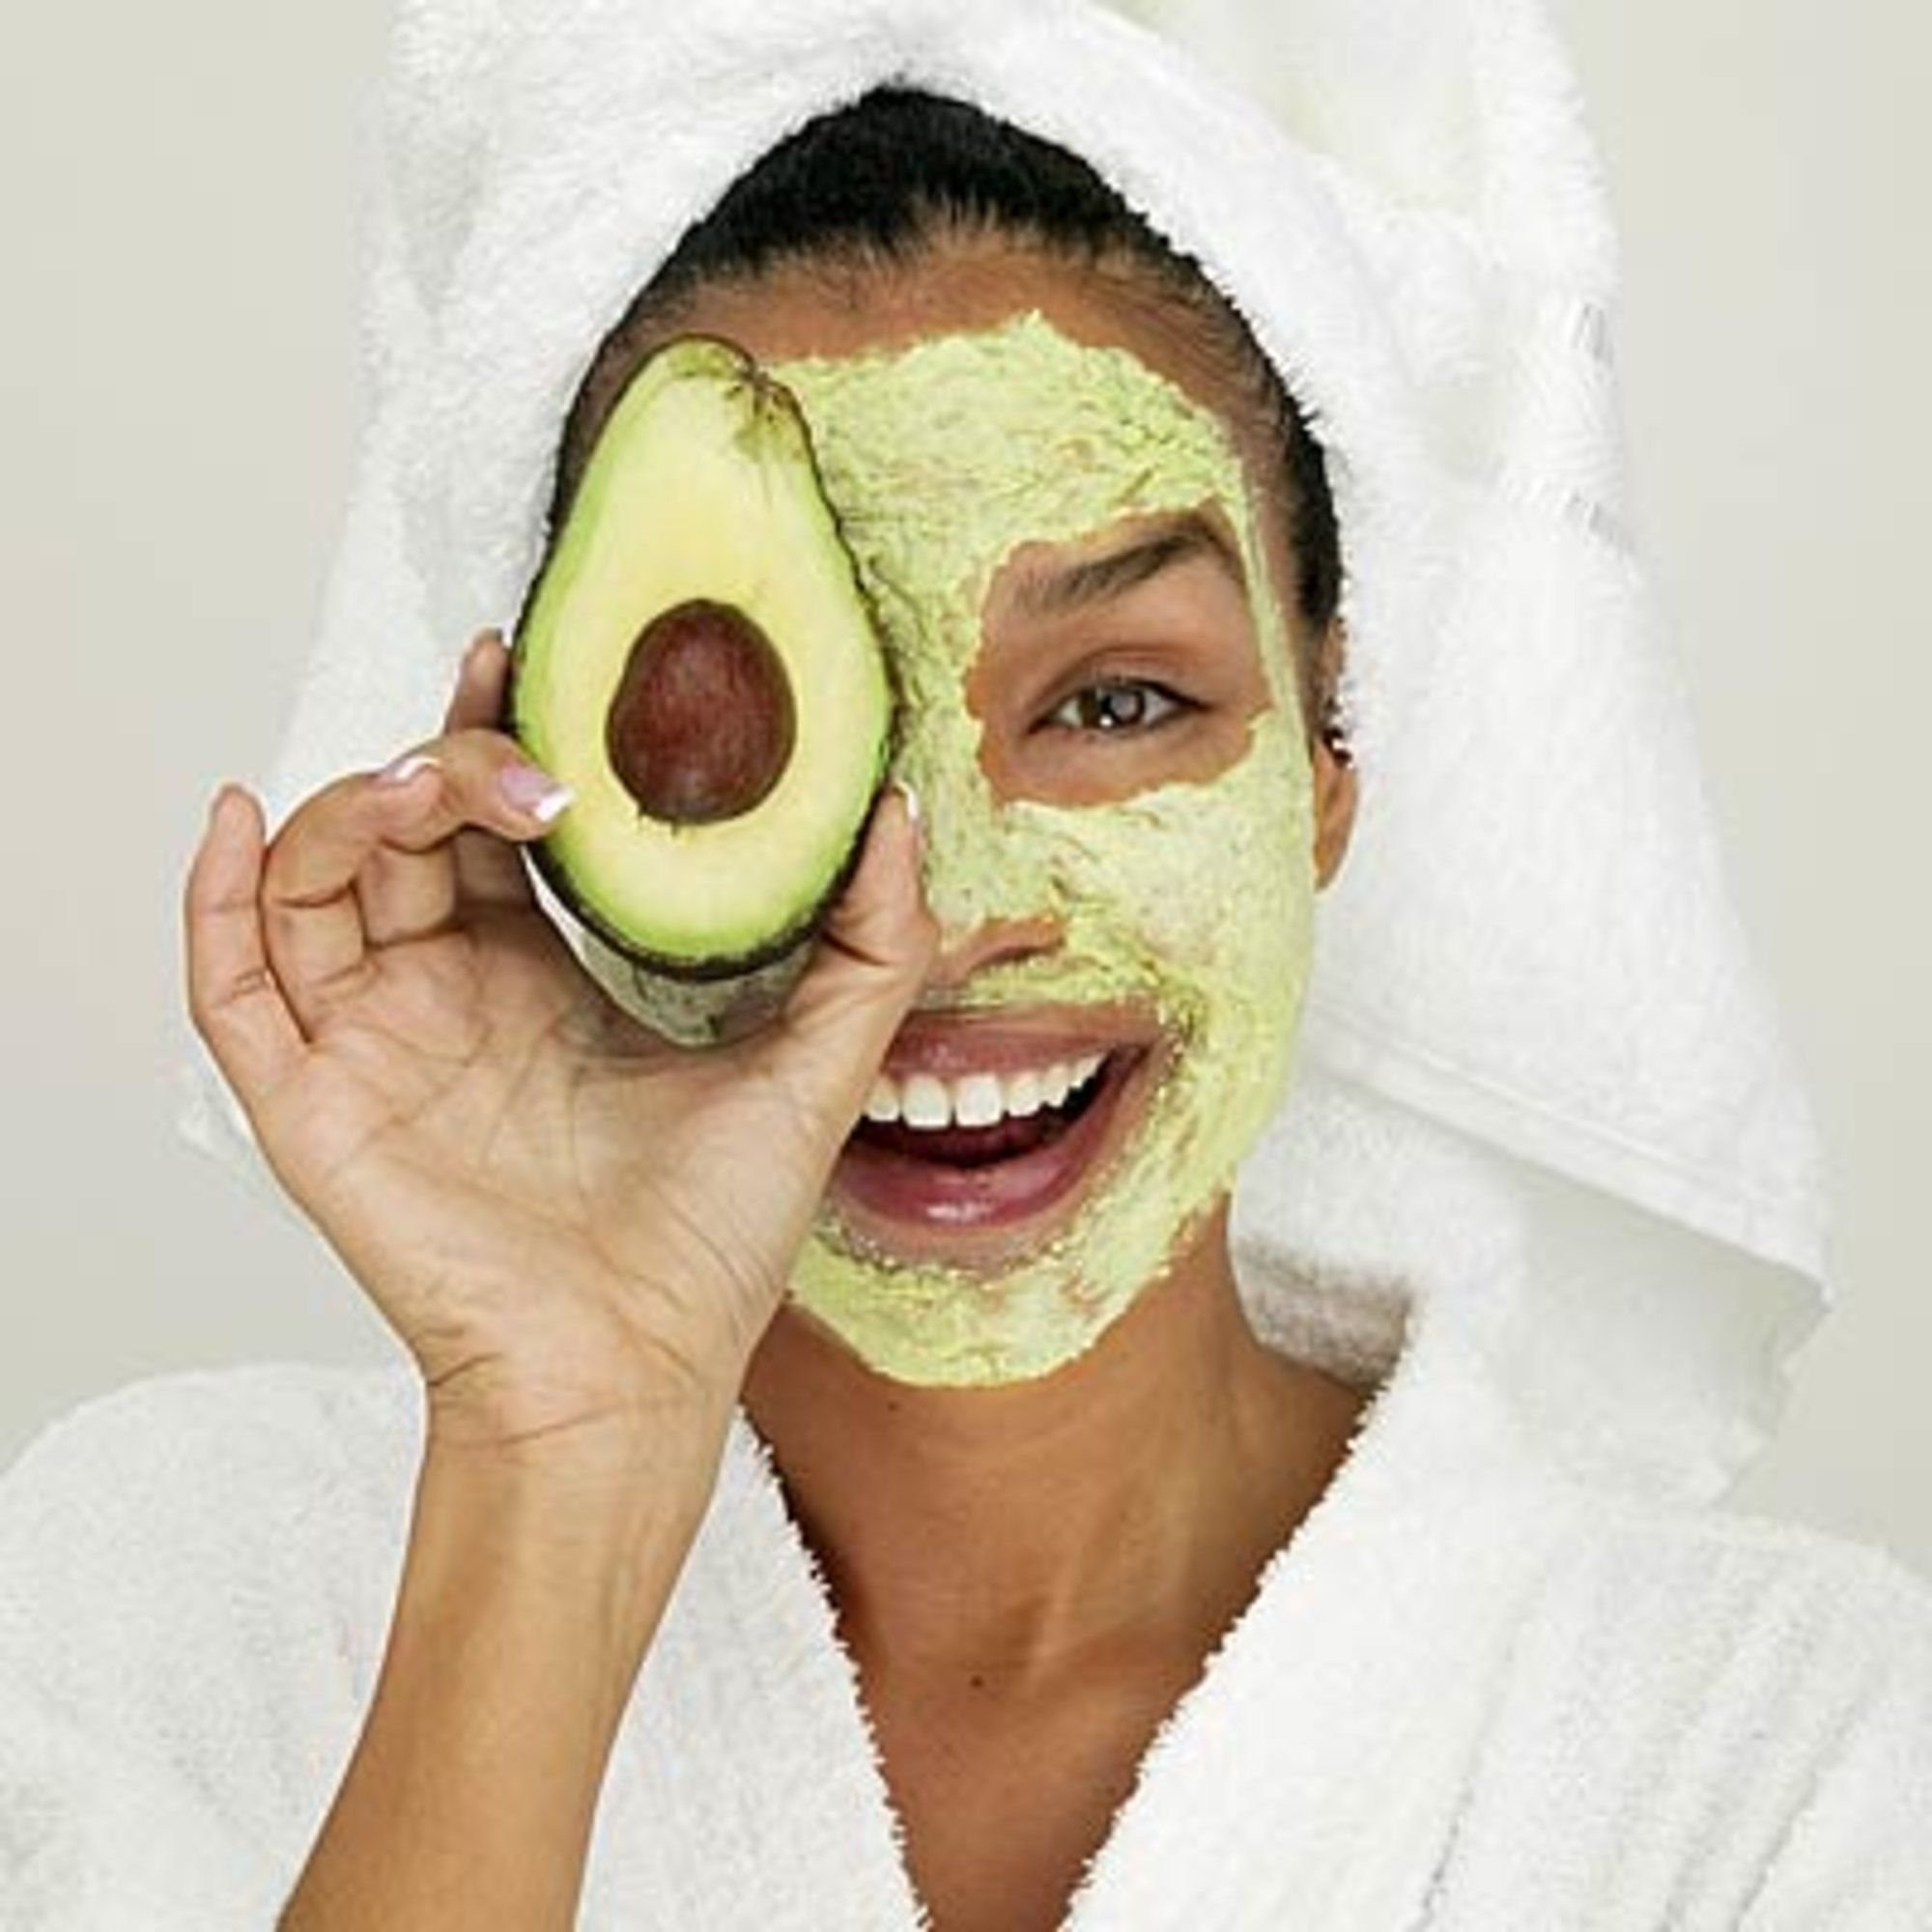 Приготовить маску для лица в домашних условиях. Avocado маска для лица. М̆̈ӑ̈с̆̈к̆̈й̈ д̆̈л̆̈я̆̈ л̆̈й̈ц̆̈ӑ̈. Майки лицо.